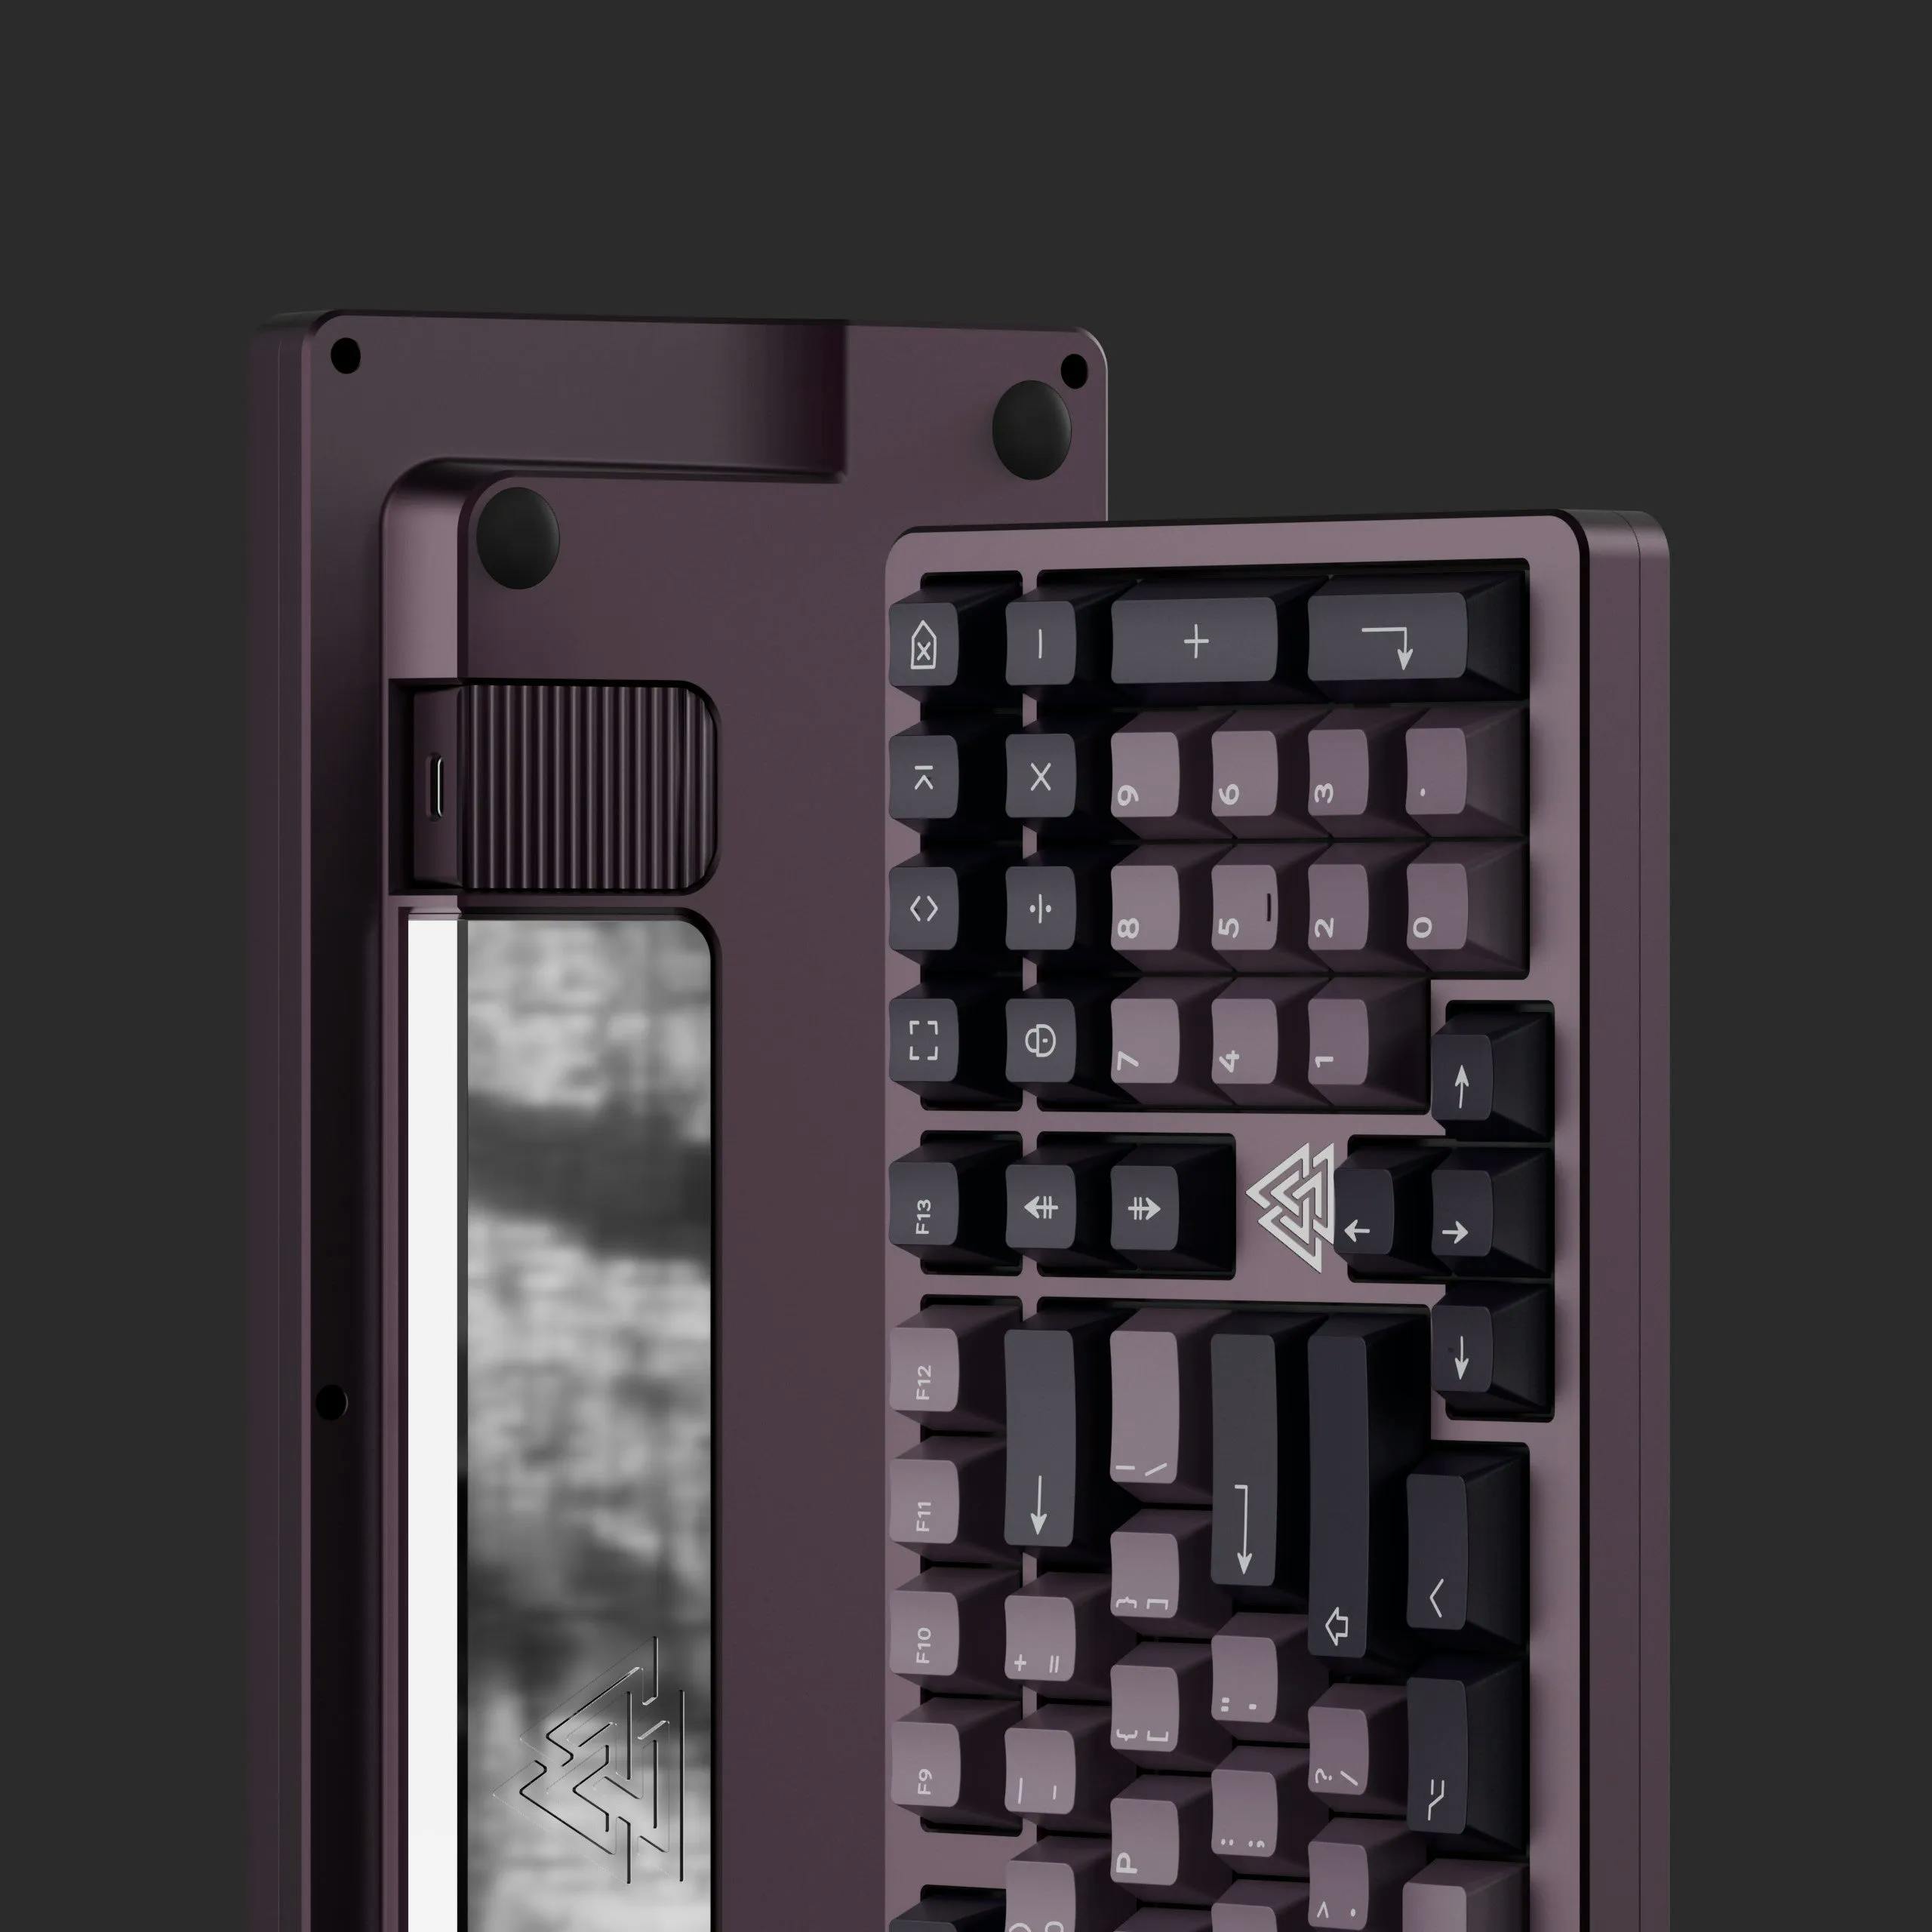 Image for KBDfans Odin R3 Mechanical Keyboard Kit